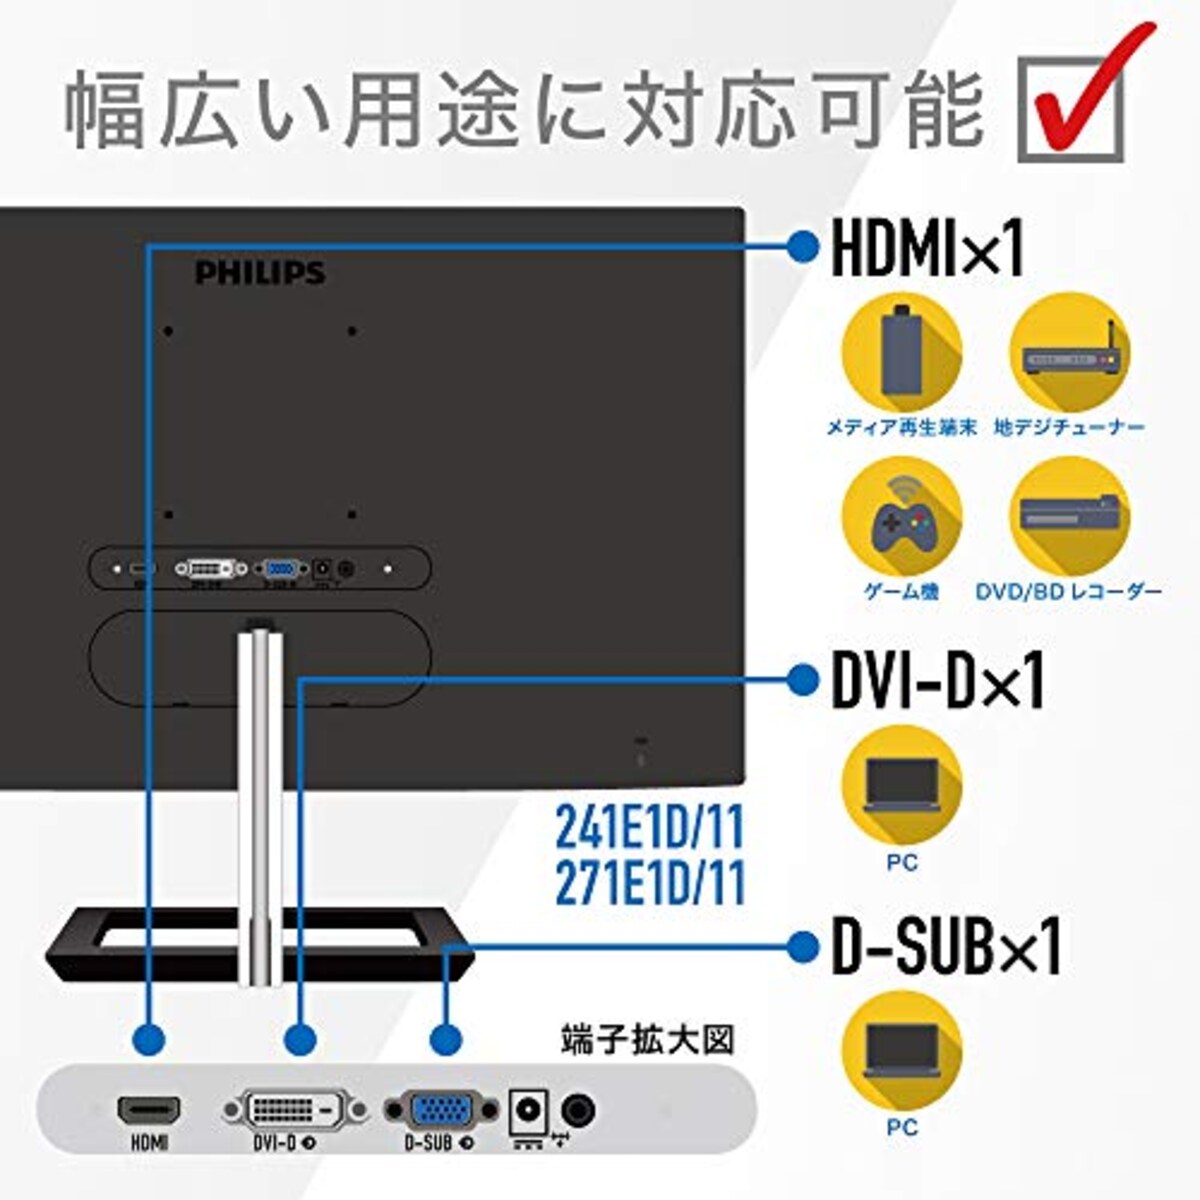  PHILIPS モニターディスプレイ 271E1D/11 (27インチ/IPS Technology/FHD/5年保証/HDMI/D-Sub/DVI-D/フレームレス)画像2 